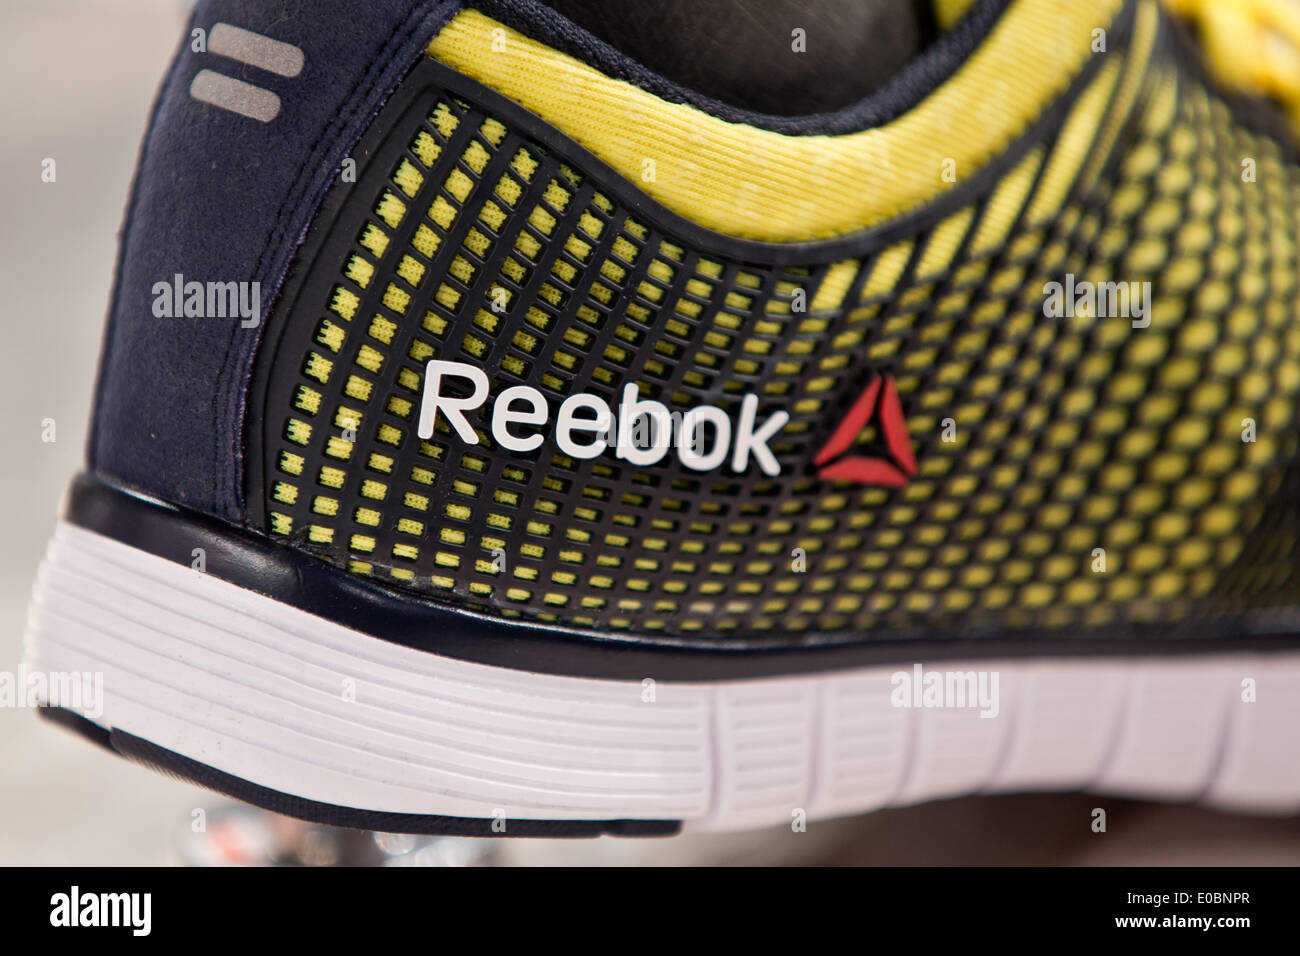 El logotipo de la marca Reebok de fabricante de artículos deportivos Adidas  es visto en una zapatilla de fútbol durante la reunión general de adidas en  Fürth, Alemania, 08 de mayo de